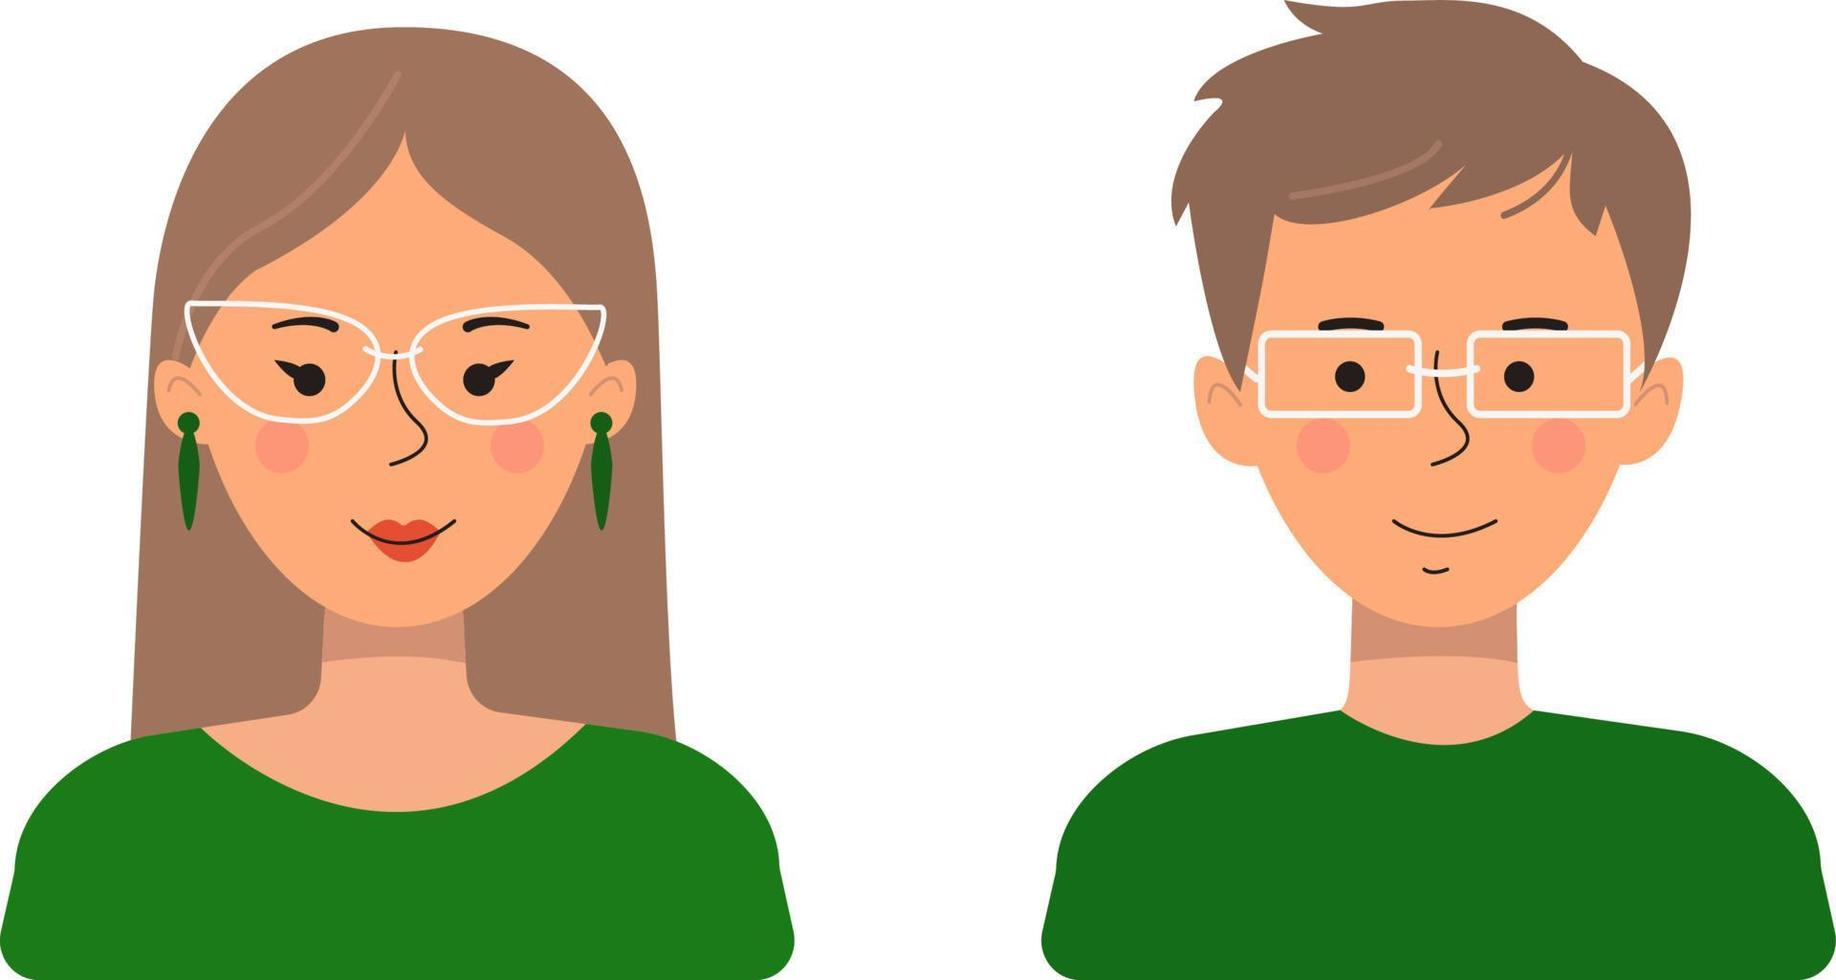 avatars van mensen in een vlakke stijl. vectorillustratie van een man en een vrouw geïsoleerd op een witte achtergrond. vector